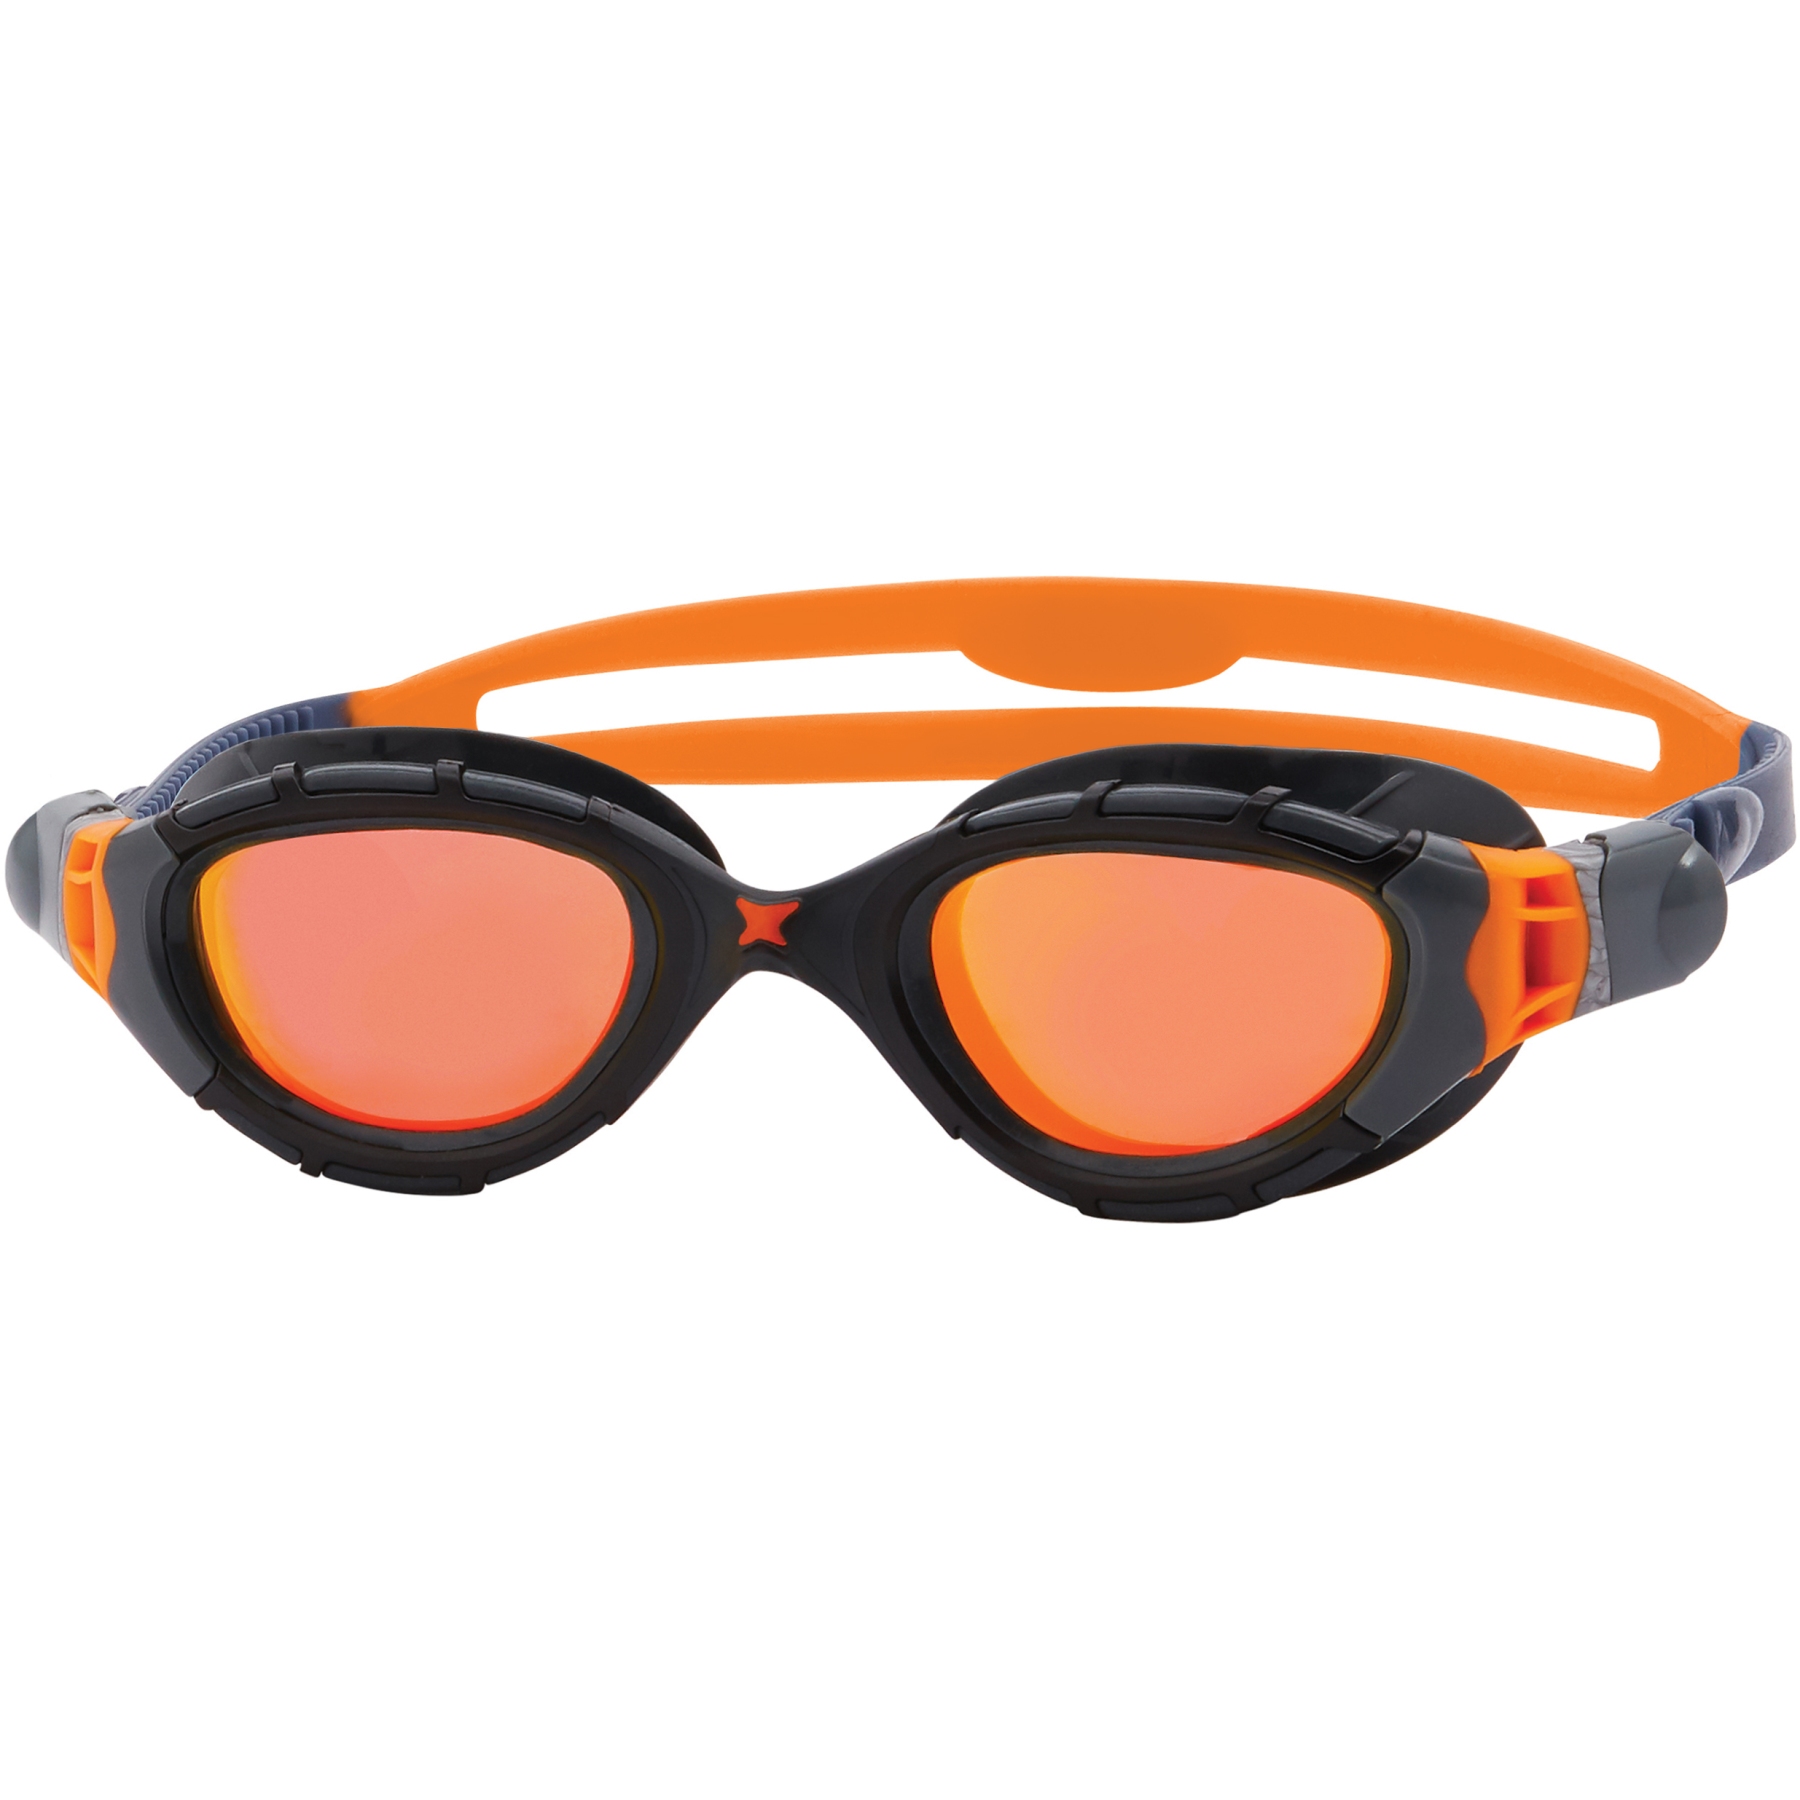 Produktbild von Zoggs Predator Flex Titanium Schwimmbrille - Verspiegelte Gläser: Orange - Regular Fit - Grau/Schwarz